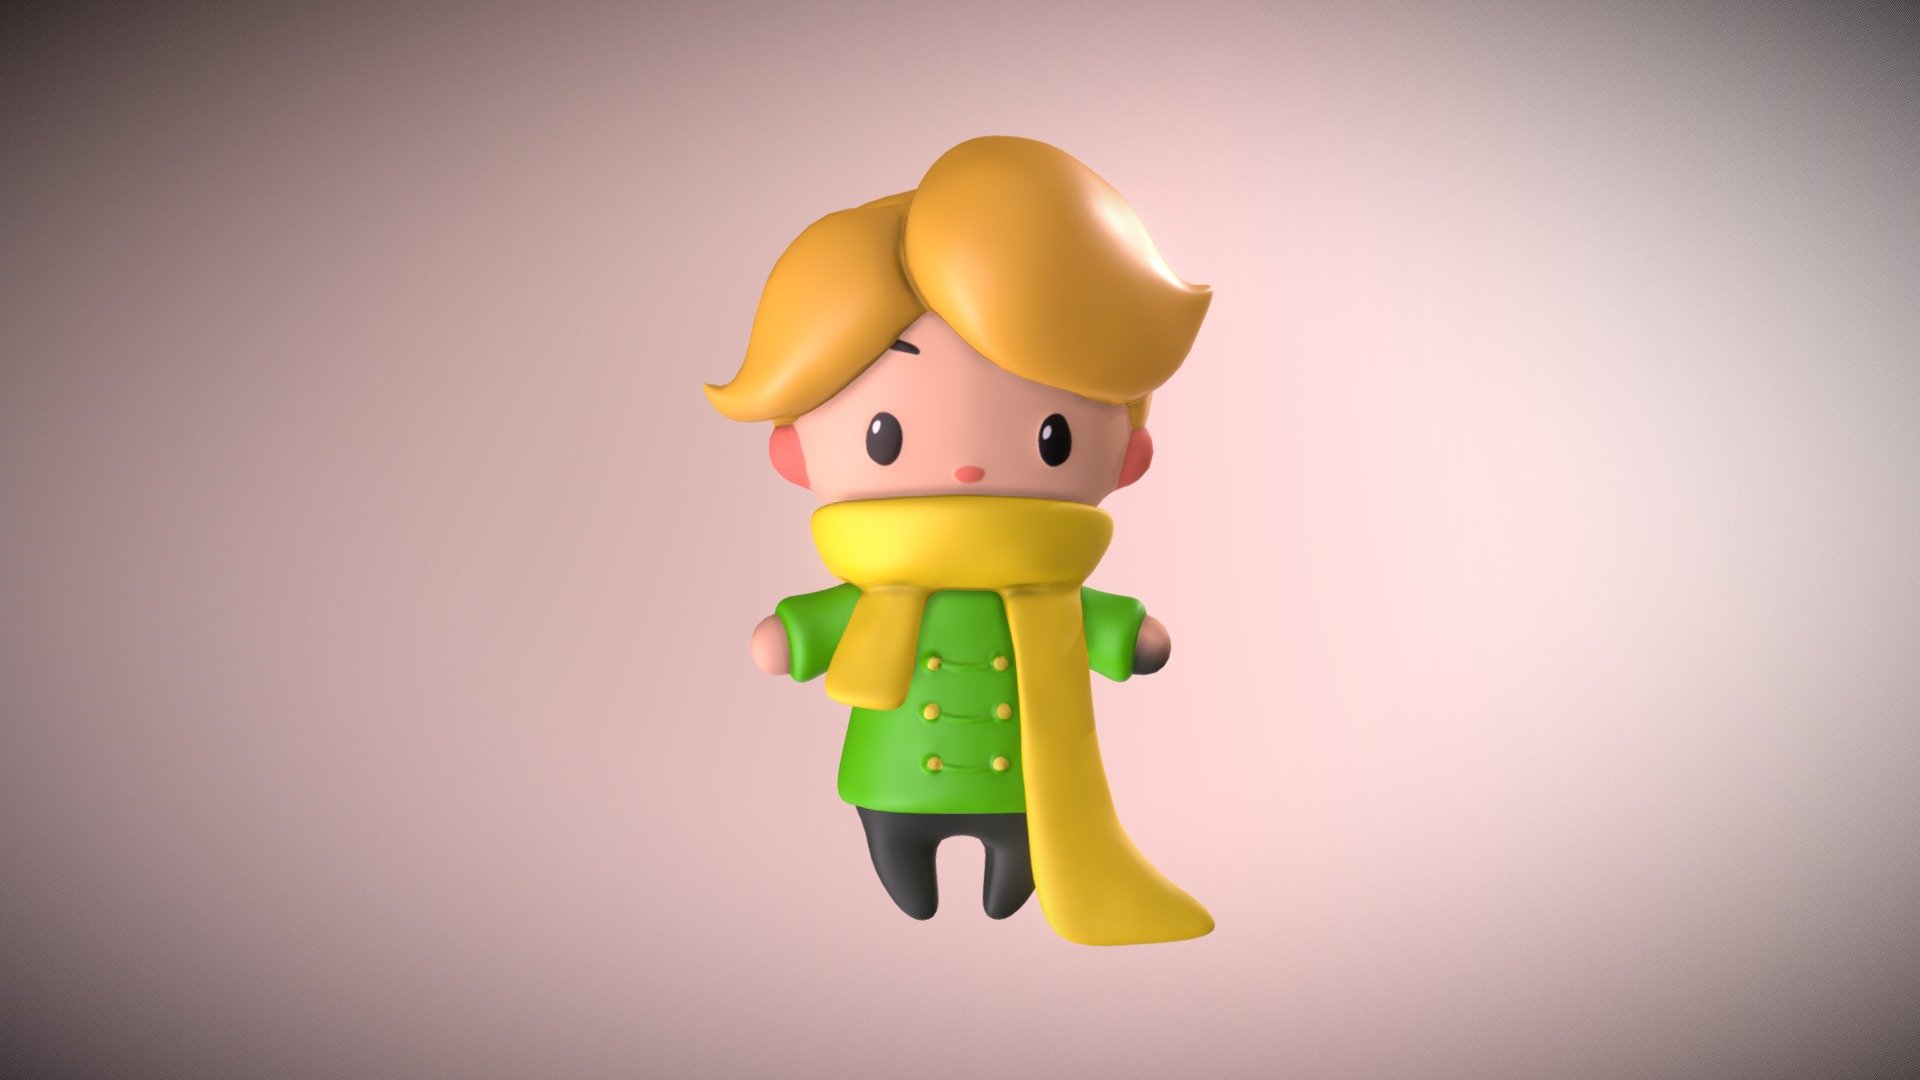 Little Prince - 3D model by biancattaneo 3d model